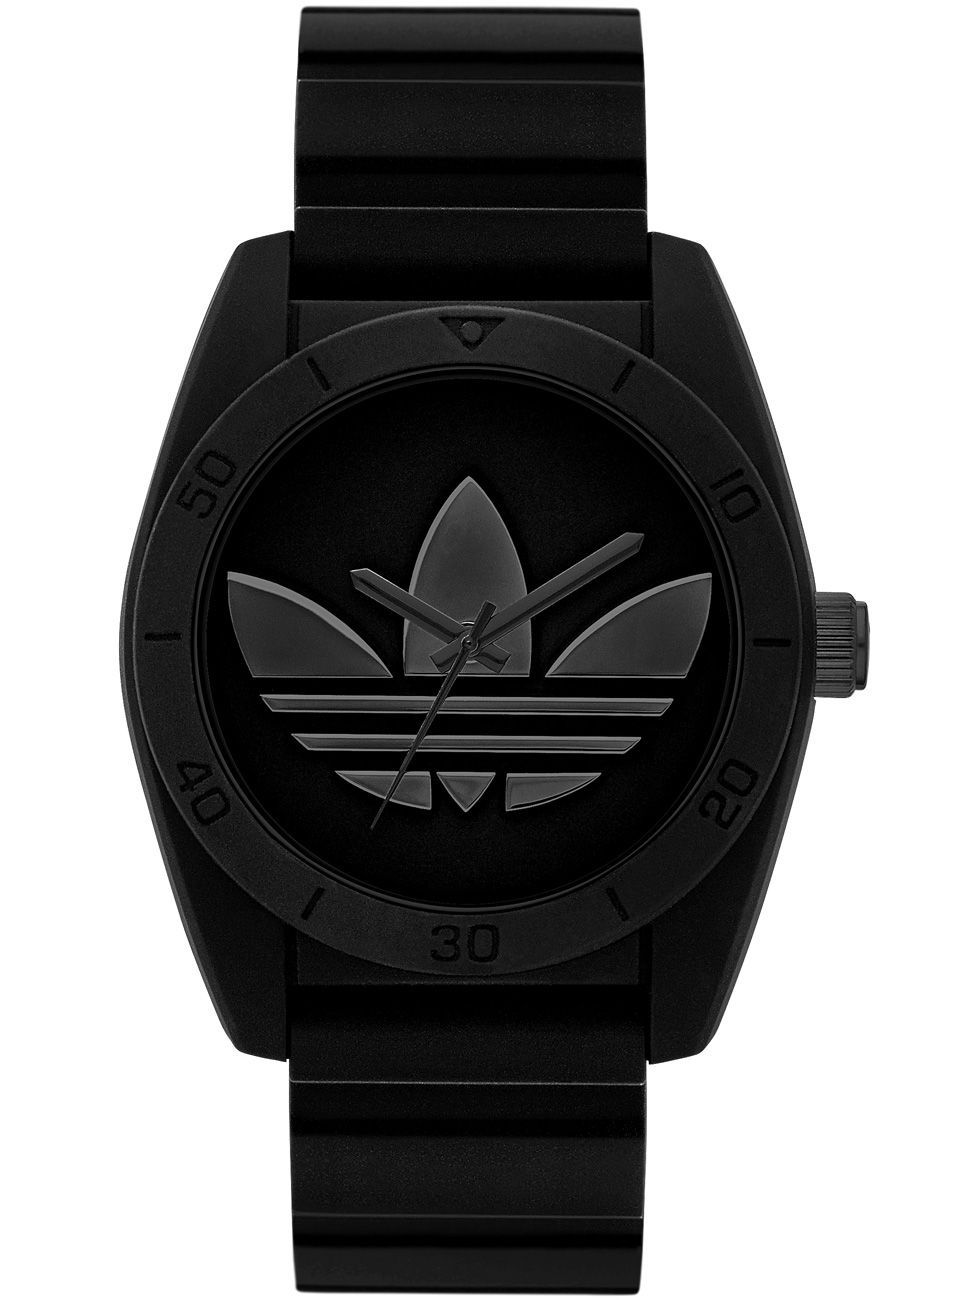 Адидас с часами. Часы адидас Ориджиналс. Наручные часы adidas adh6152. Часы adidas Santiago. Часы adidas adh2653.